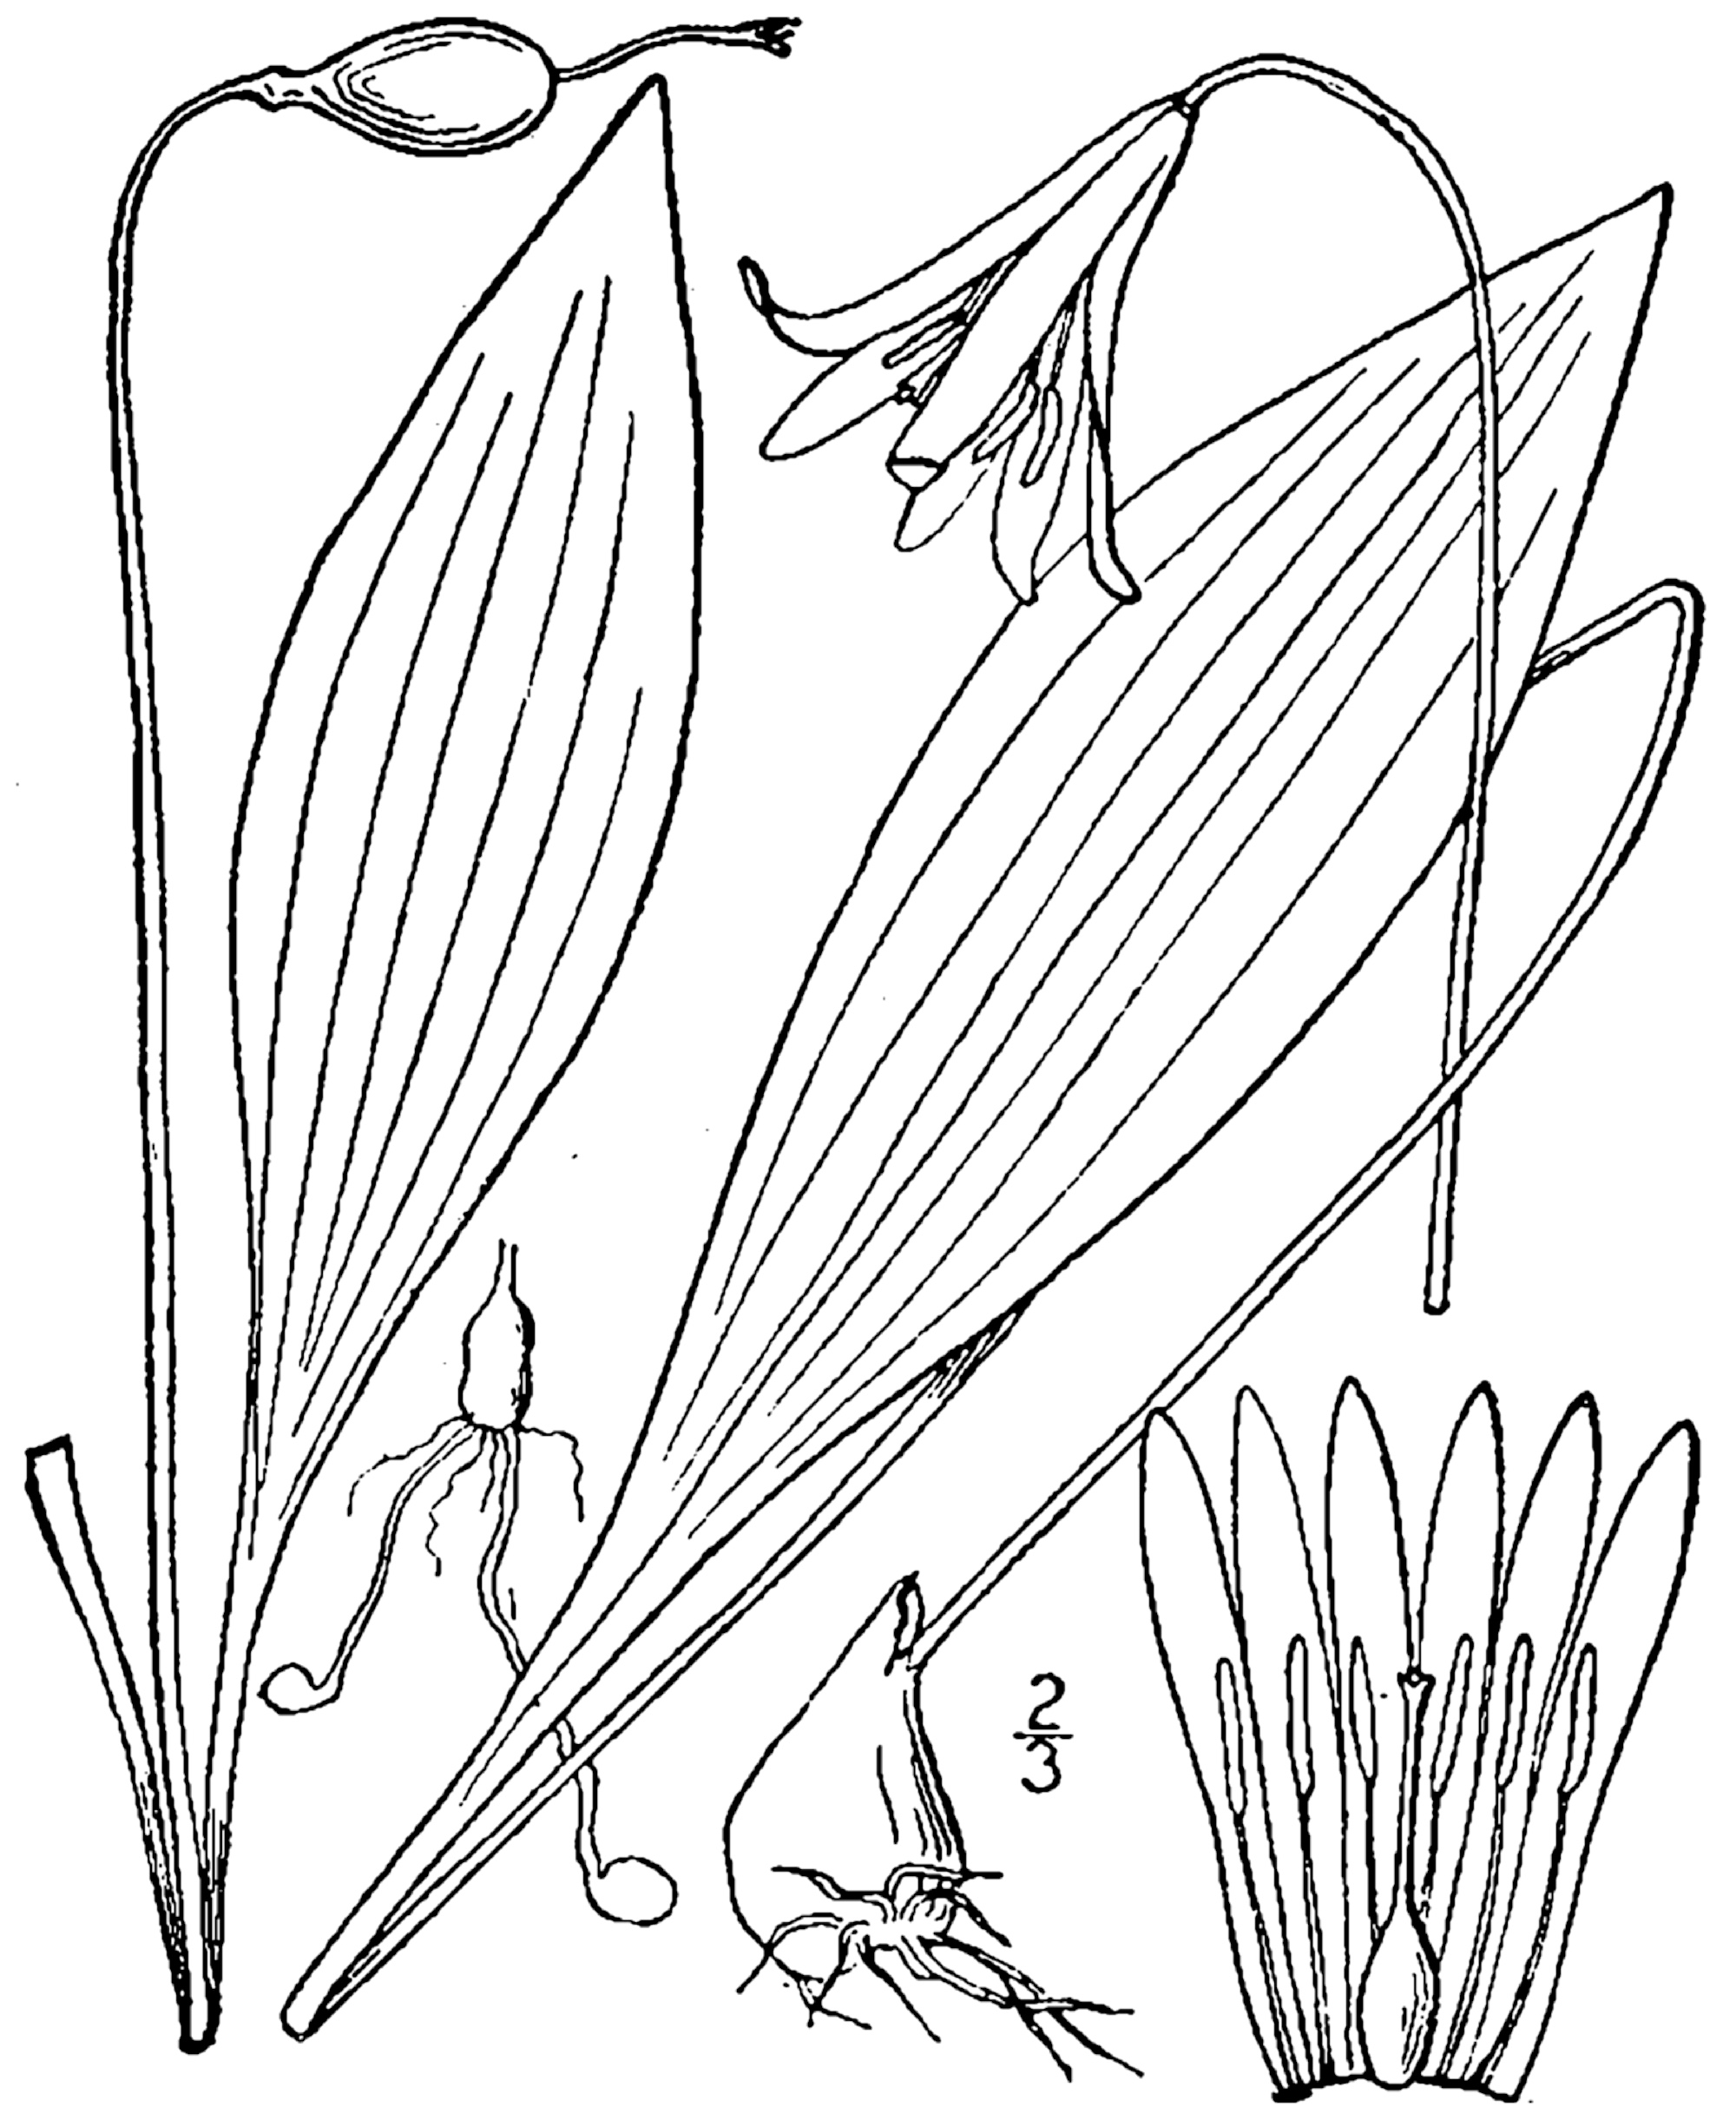 1913 illustration of Erythronium americanum.